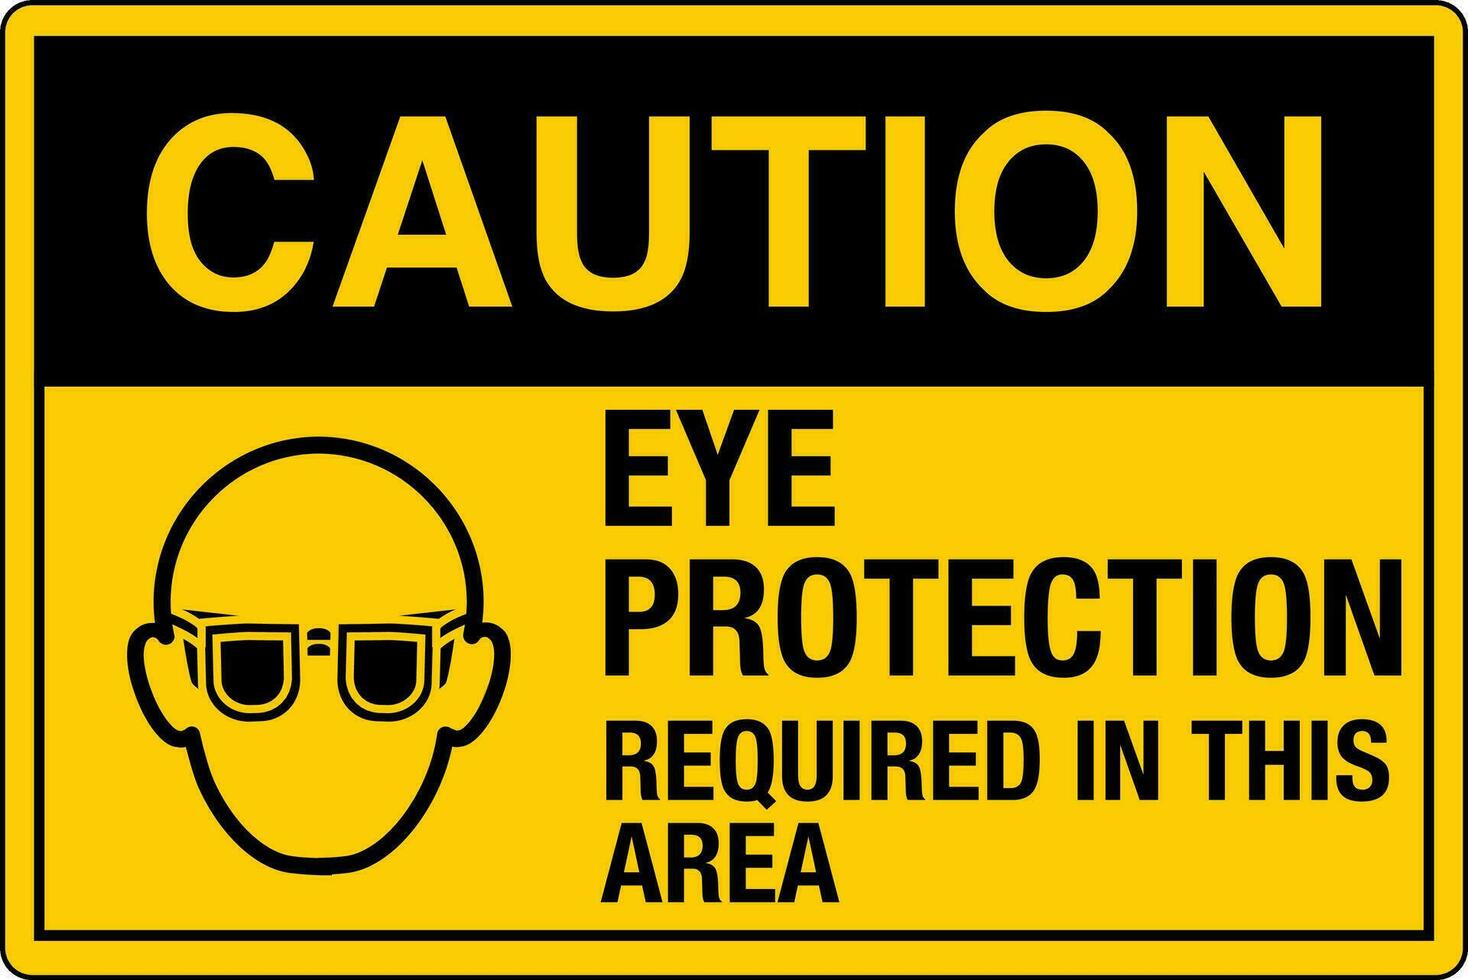 osha normas símbolos registrado lugar de trabajo la seguridad firmar peligro precaución advertencia ojo proteccion necesario en esta zona vector